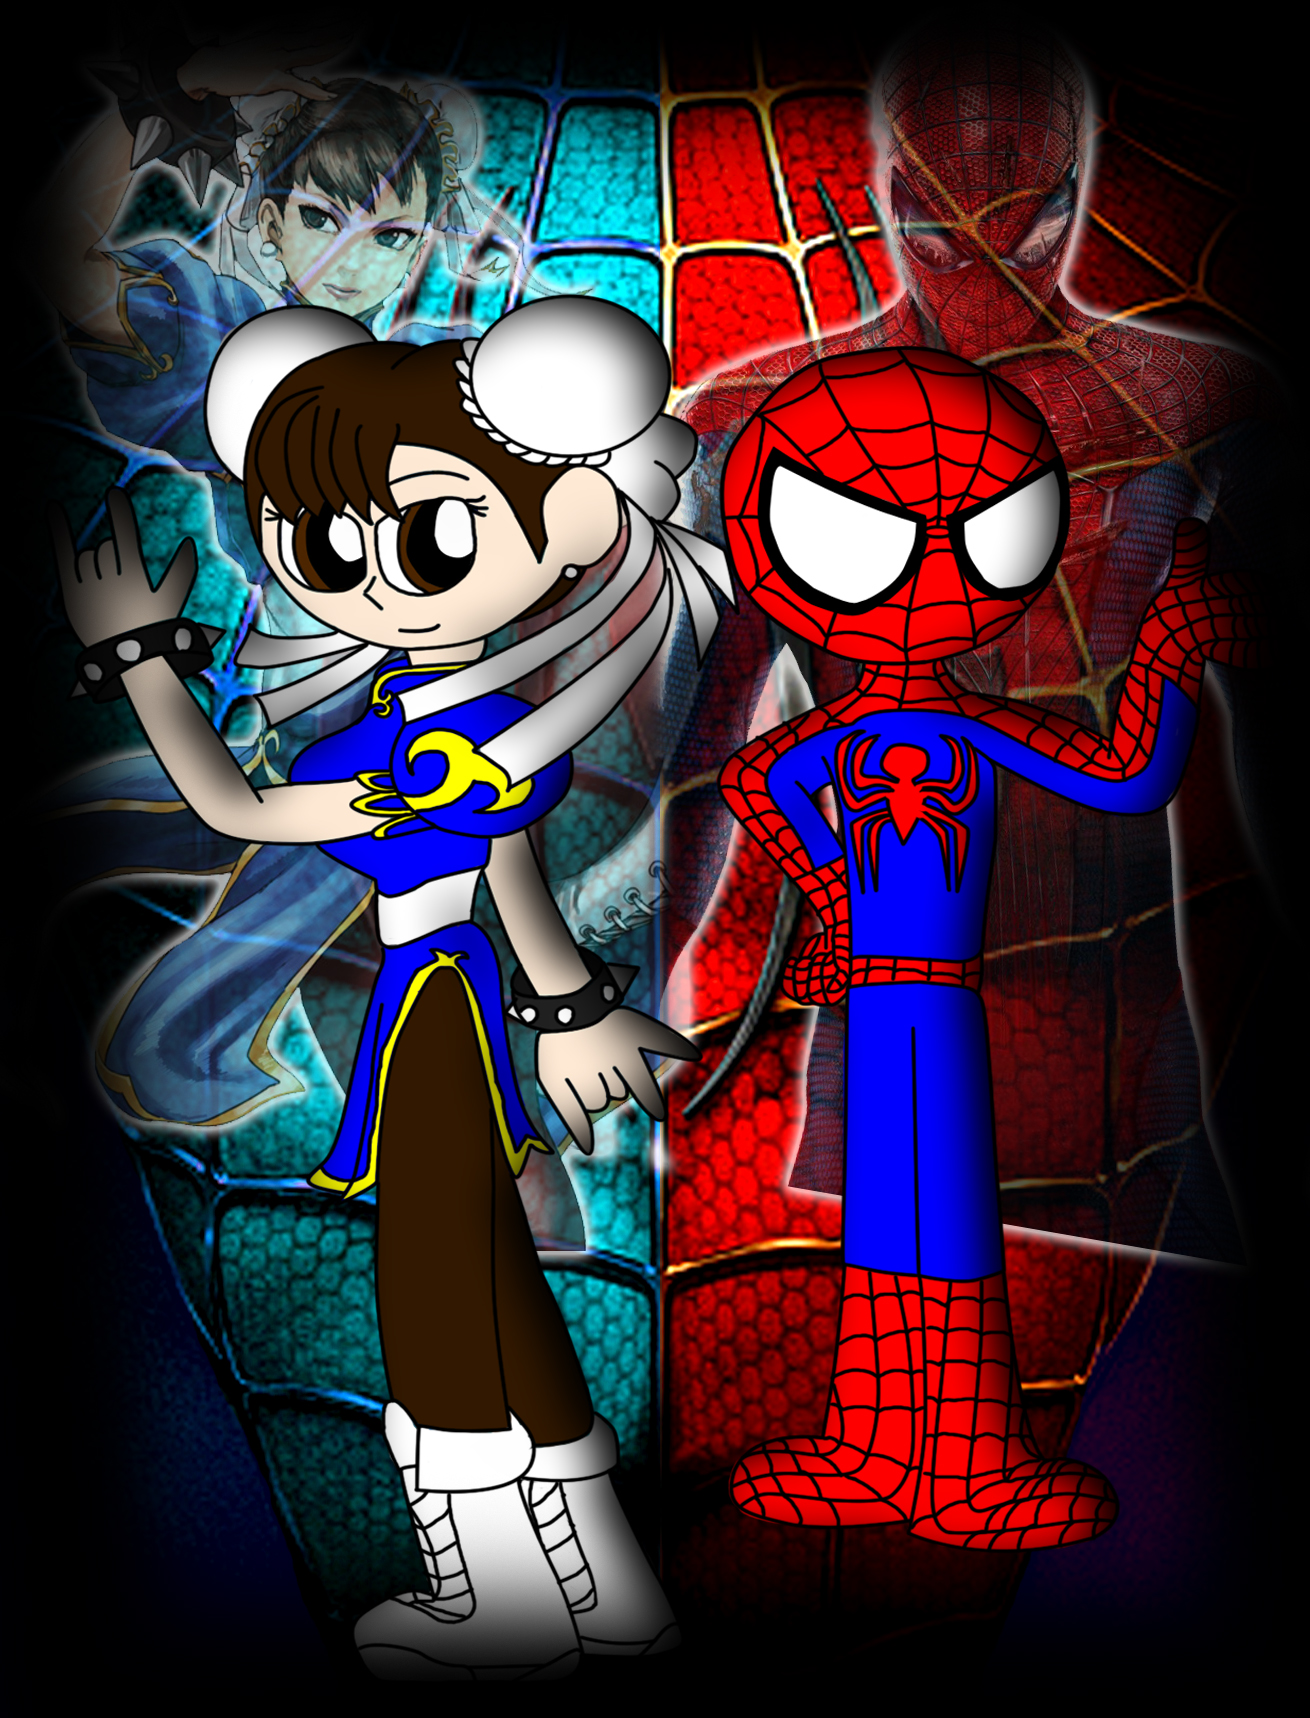 Spider-Man and Chun-Li again